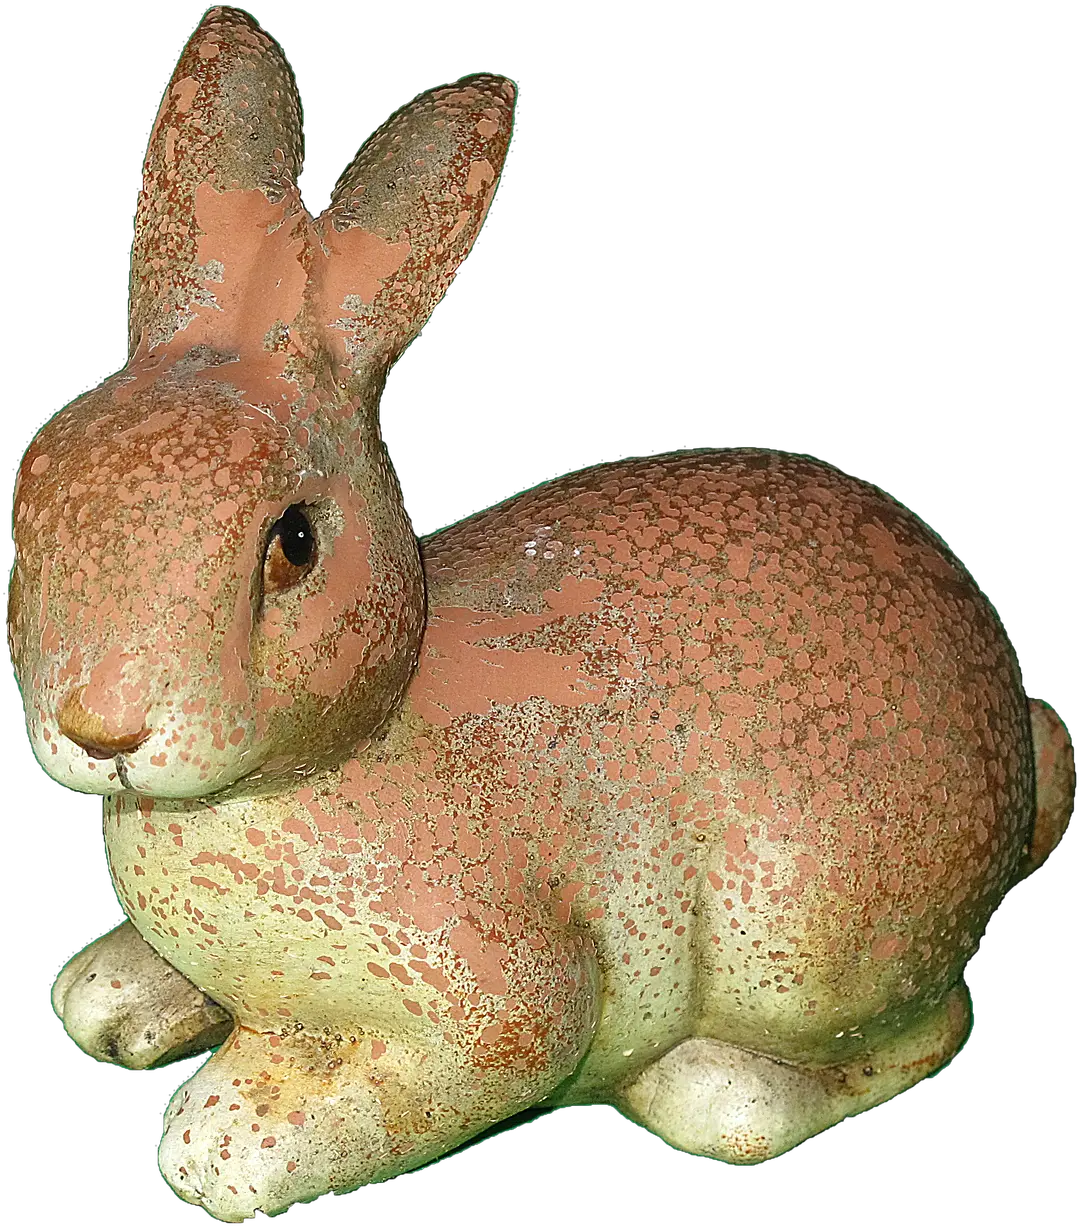 Download Hd Rabbit Ears Png Transparent Image Nicepngcom Figura De Una Liebre Ears Png